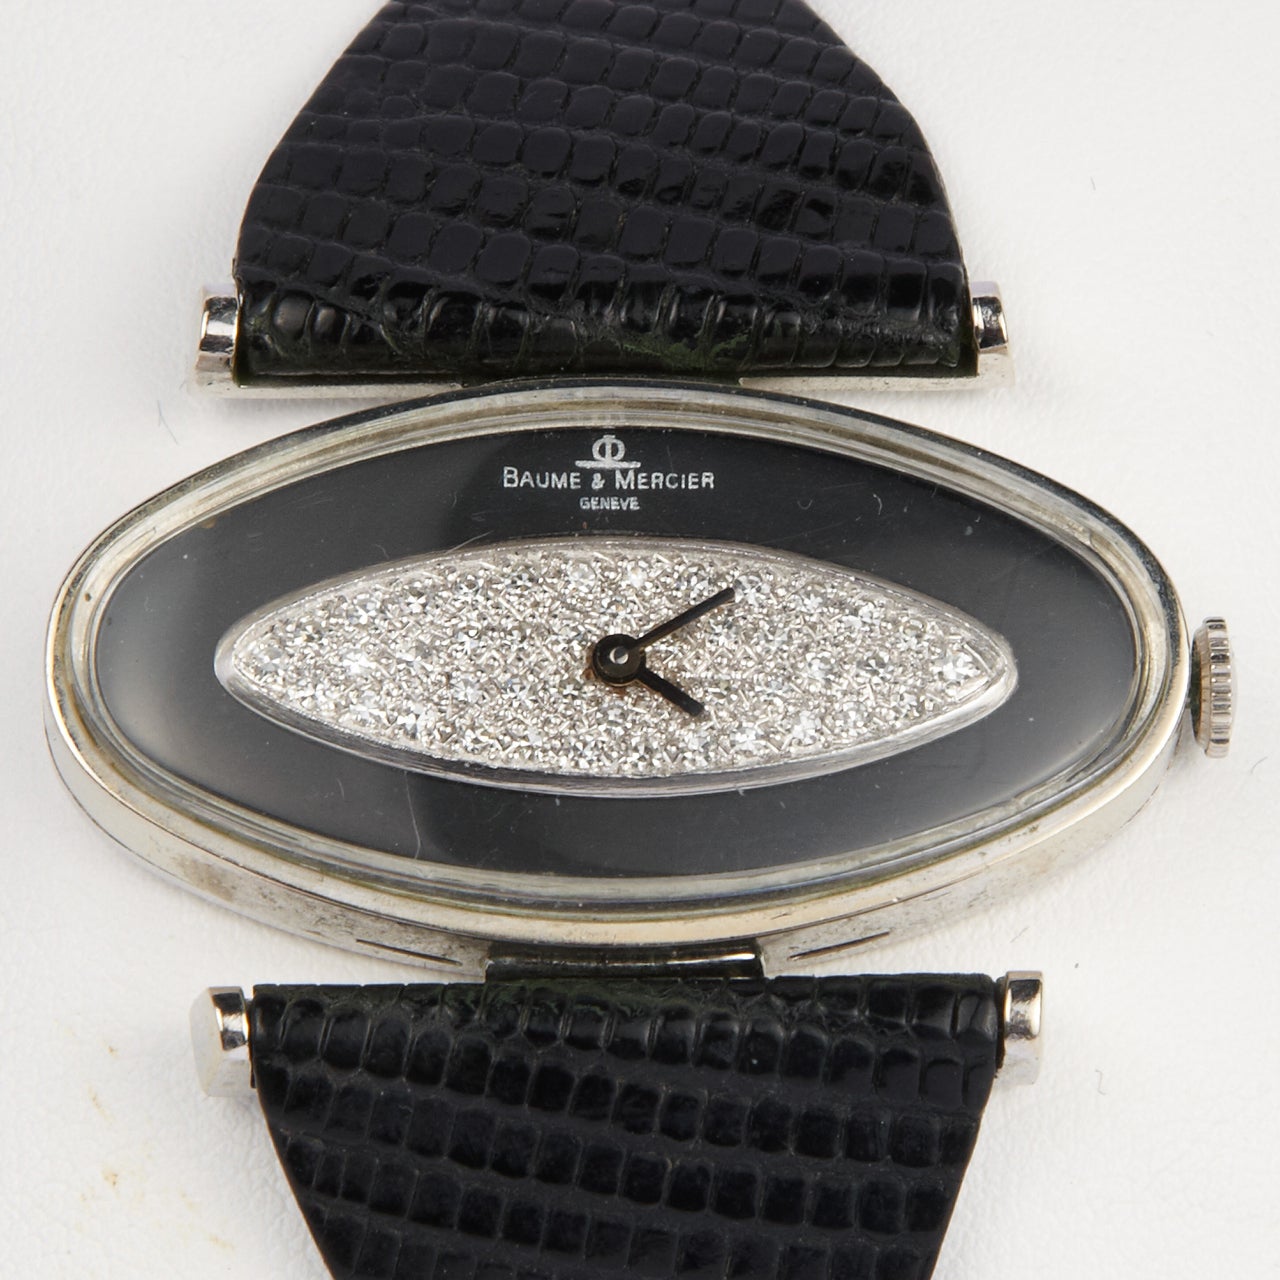 Baume & Mercier 14k white gold, onyx and diamond wristwatch.